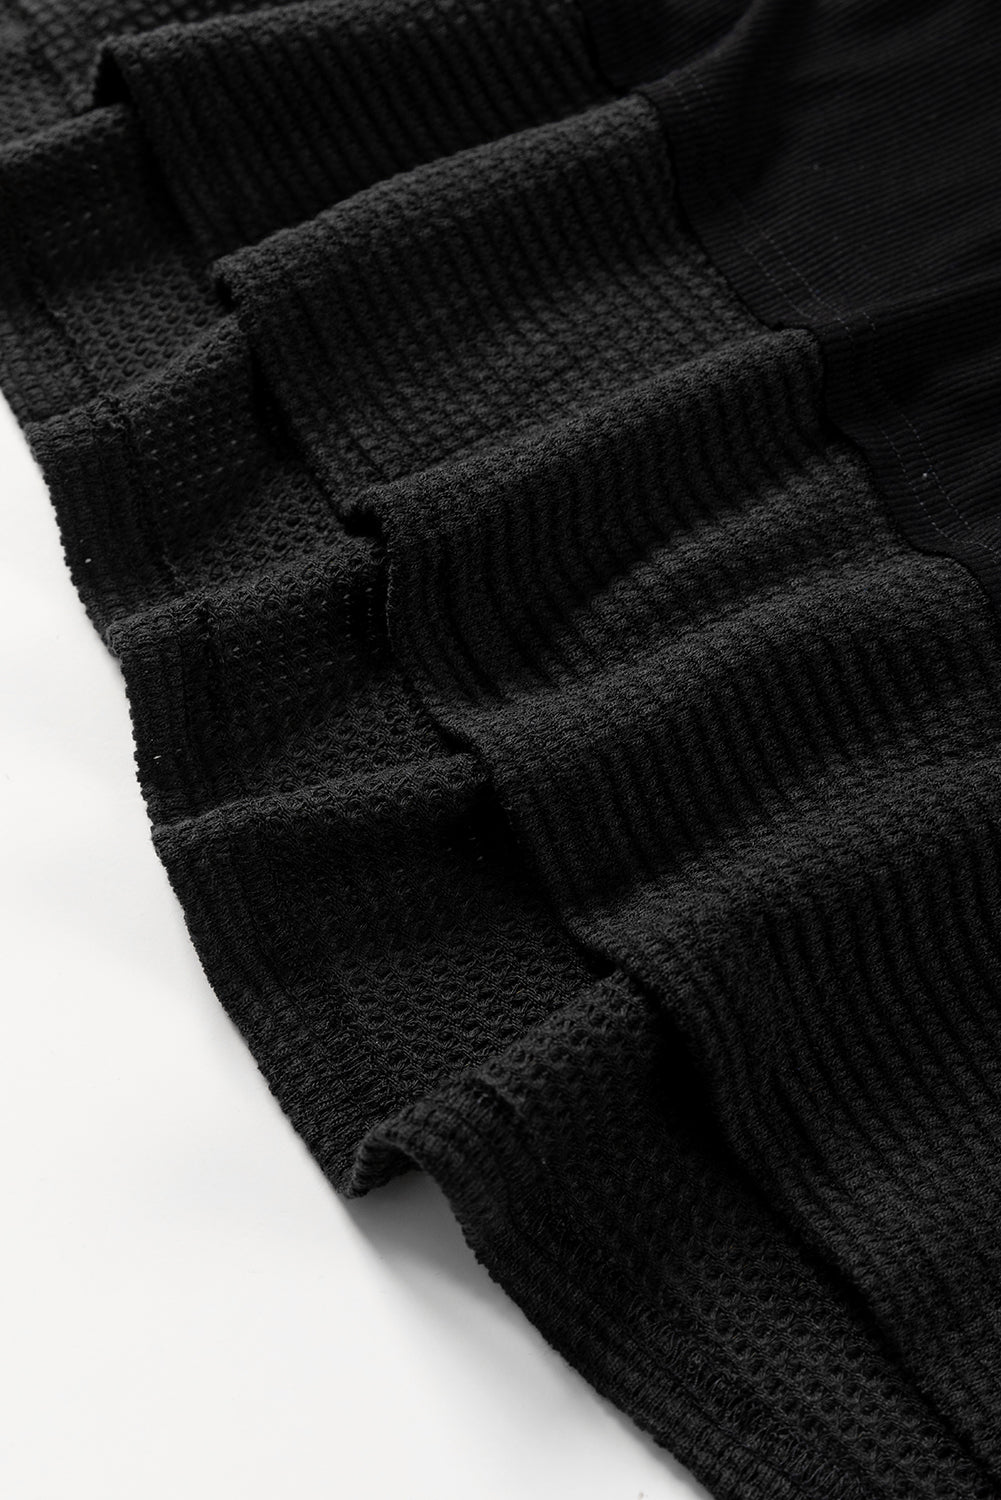 Black Contrast Knit Splicing V Neck Studded Blouse